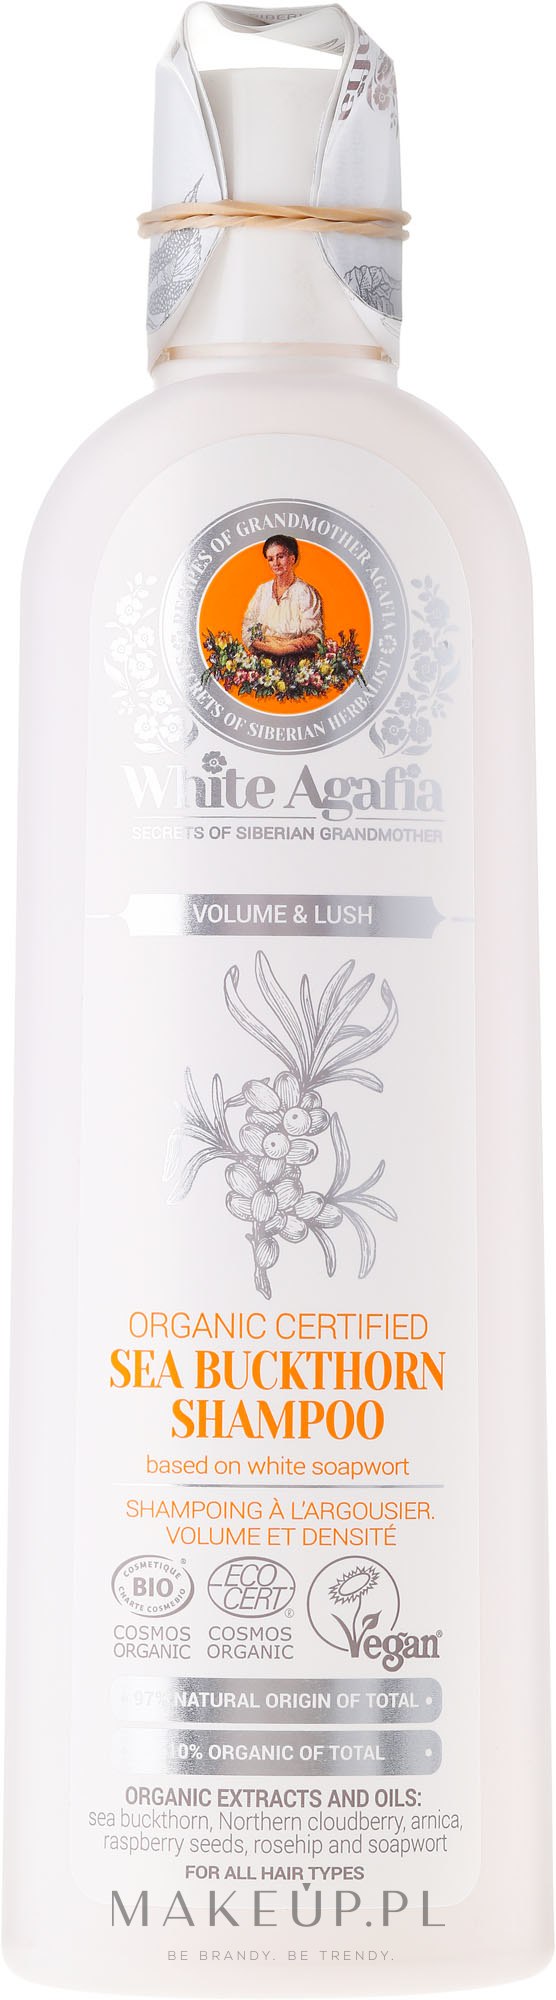 white agafia szampon do włosów rokitnikowy wizaz